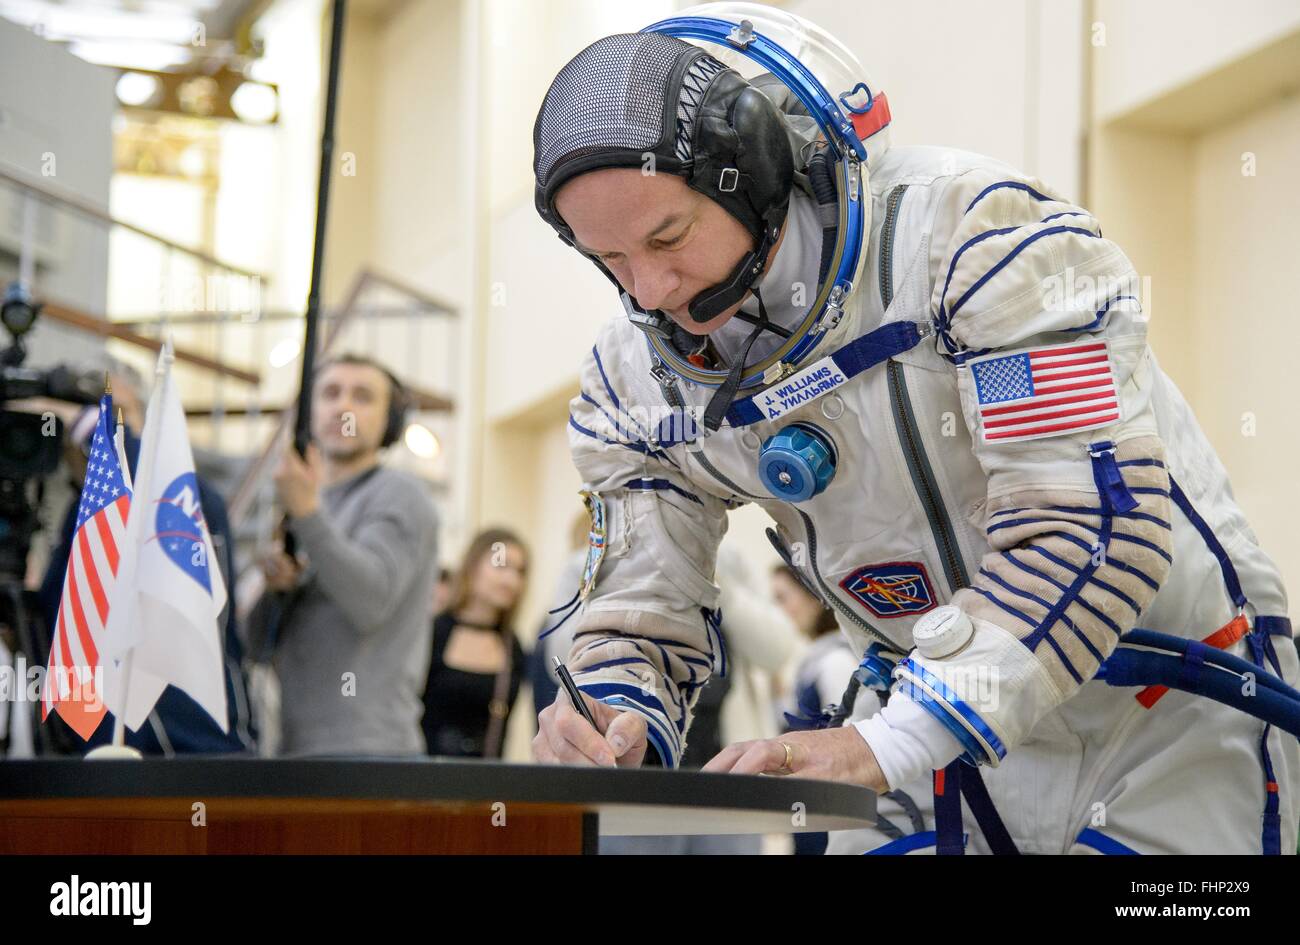 Star City, Russia. Il 25 febbraio 2016. Stazione Spaziale Internazionale Expedition 47 astronauta americano Jeff Williams segni documenti durante la finale degli esami di qualifica al Gagarin Cosmonaut Training Center, 25 febbraio 2016 nella città delle stelle, Russia. Foto Stock